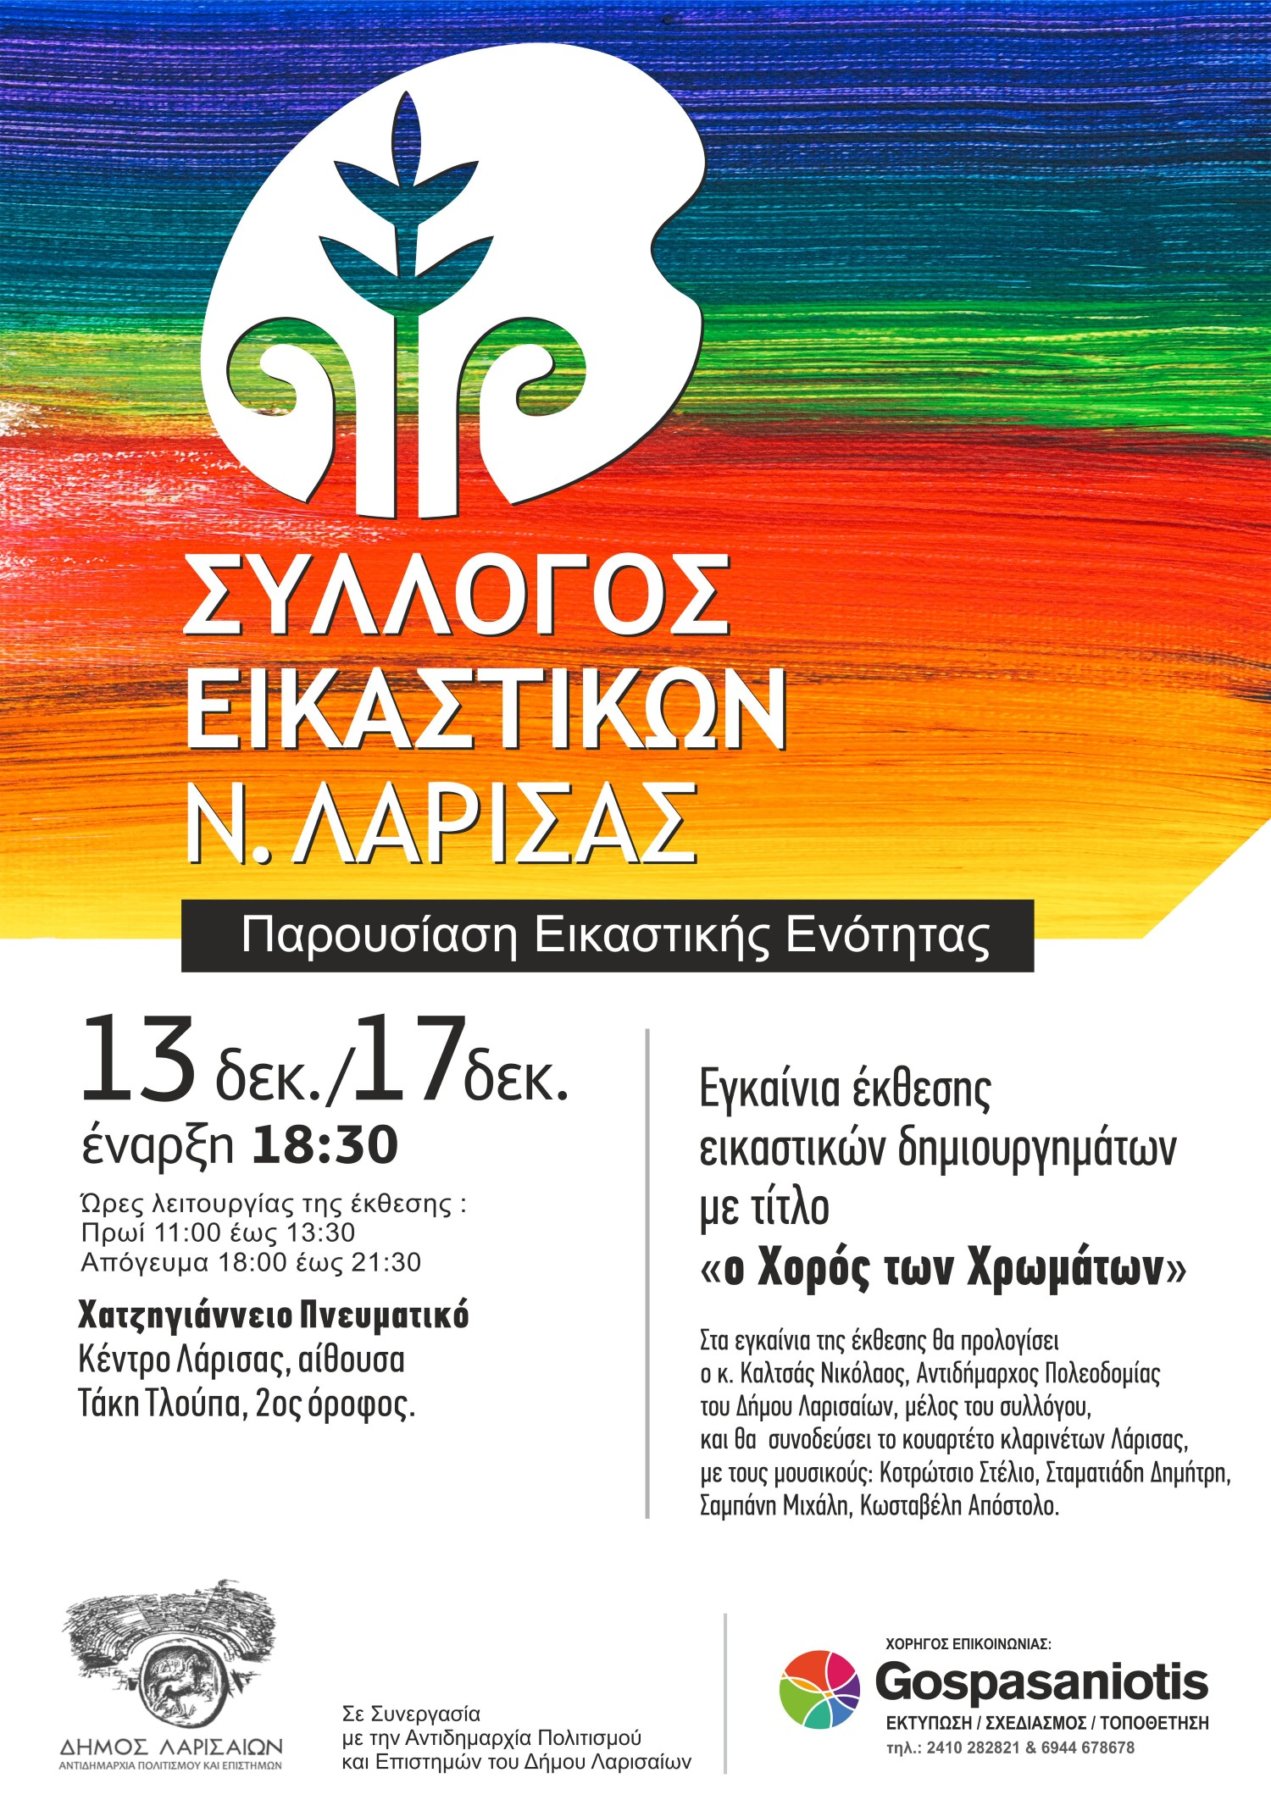 "Ο Χορός των Χρωμάτων" στο Χατζηγιάννειο